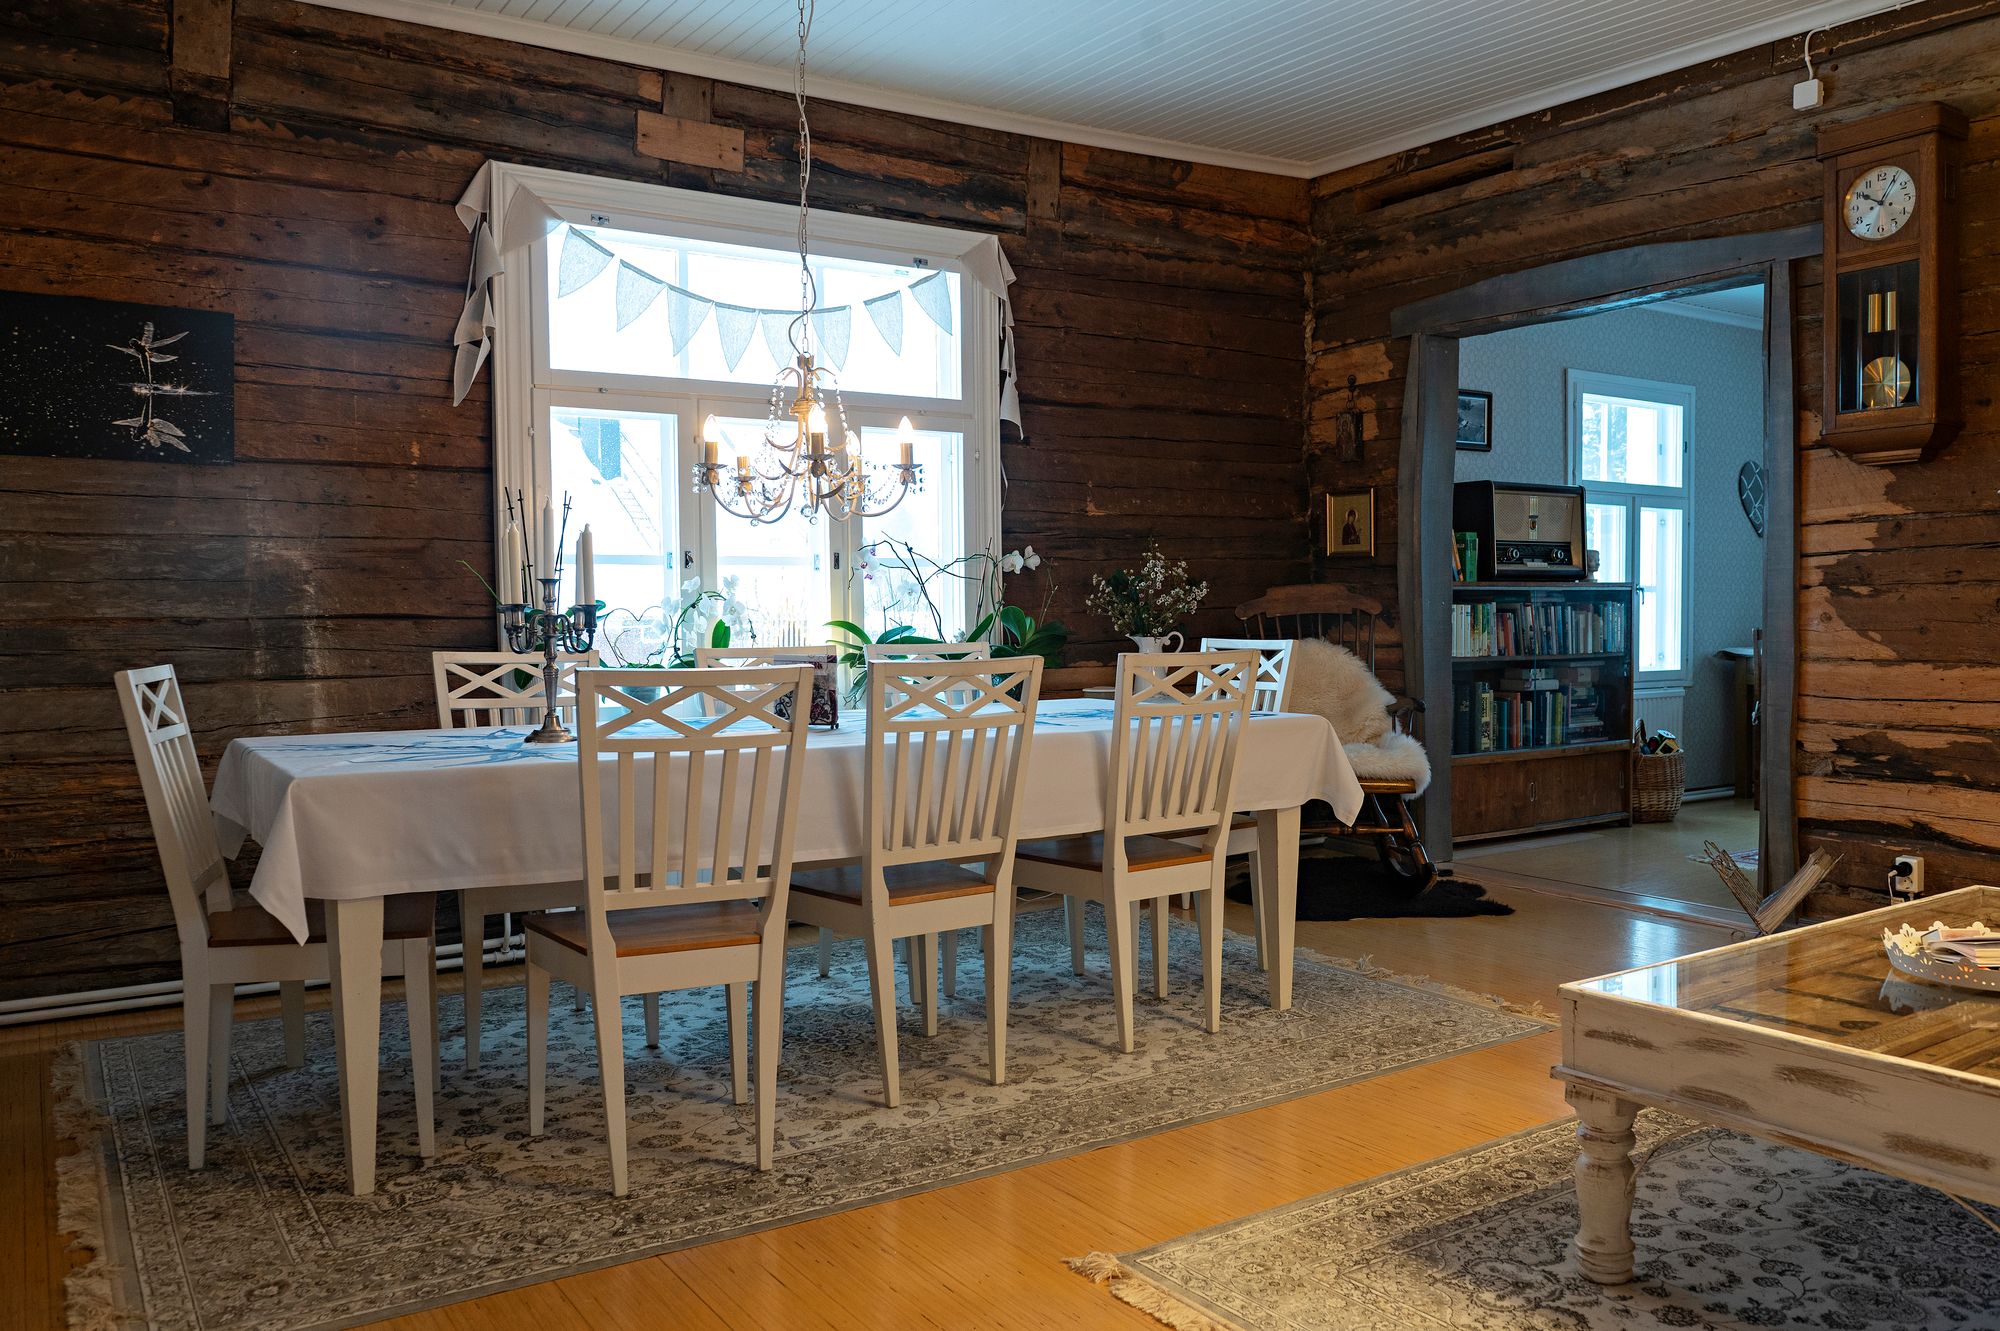 Tuvan ruokapöytä on Nupulle rakas paikka istuskella. Emännän paikka on pöydän vasemmassa päädyssä ja isännän häntä vastapäätä. © Linda Varoma